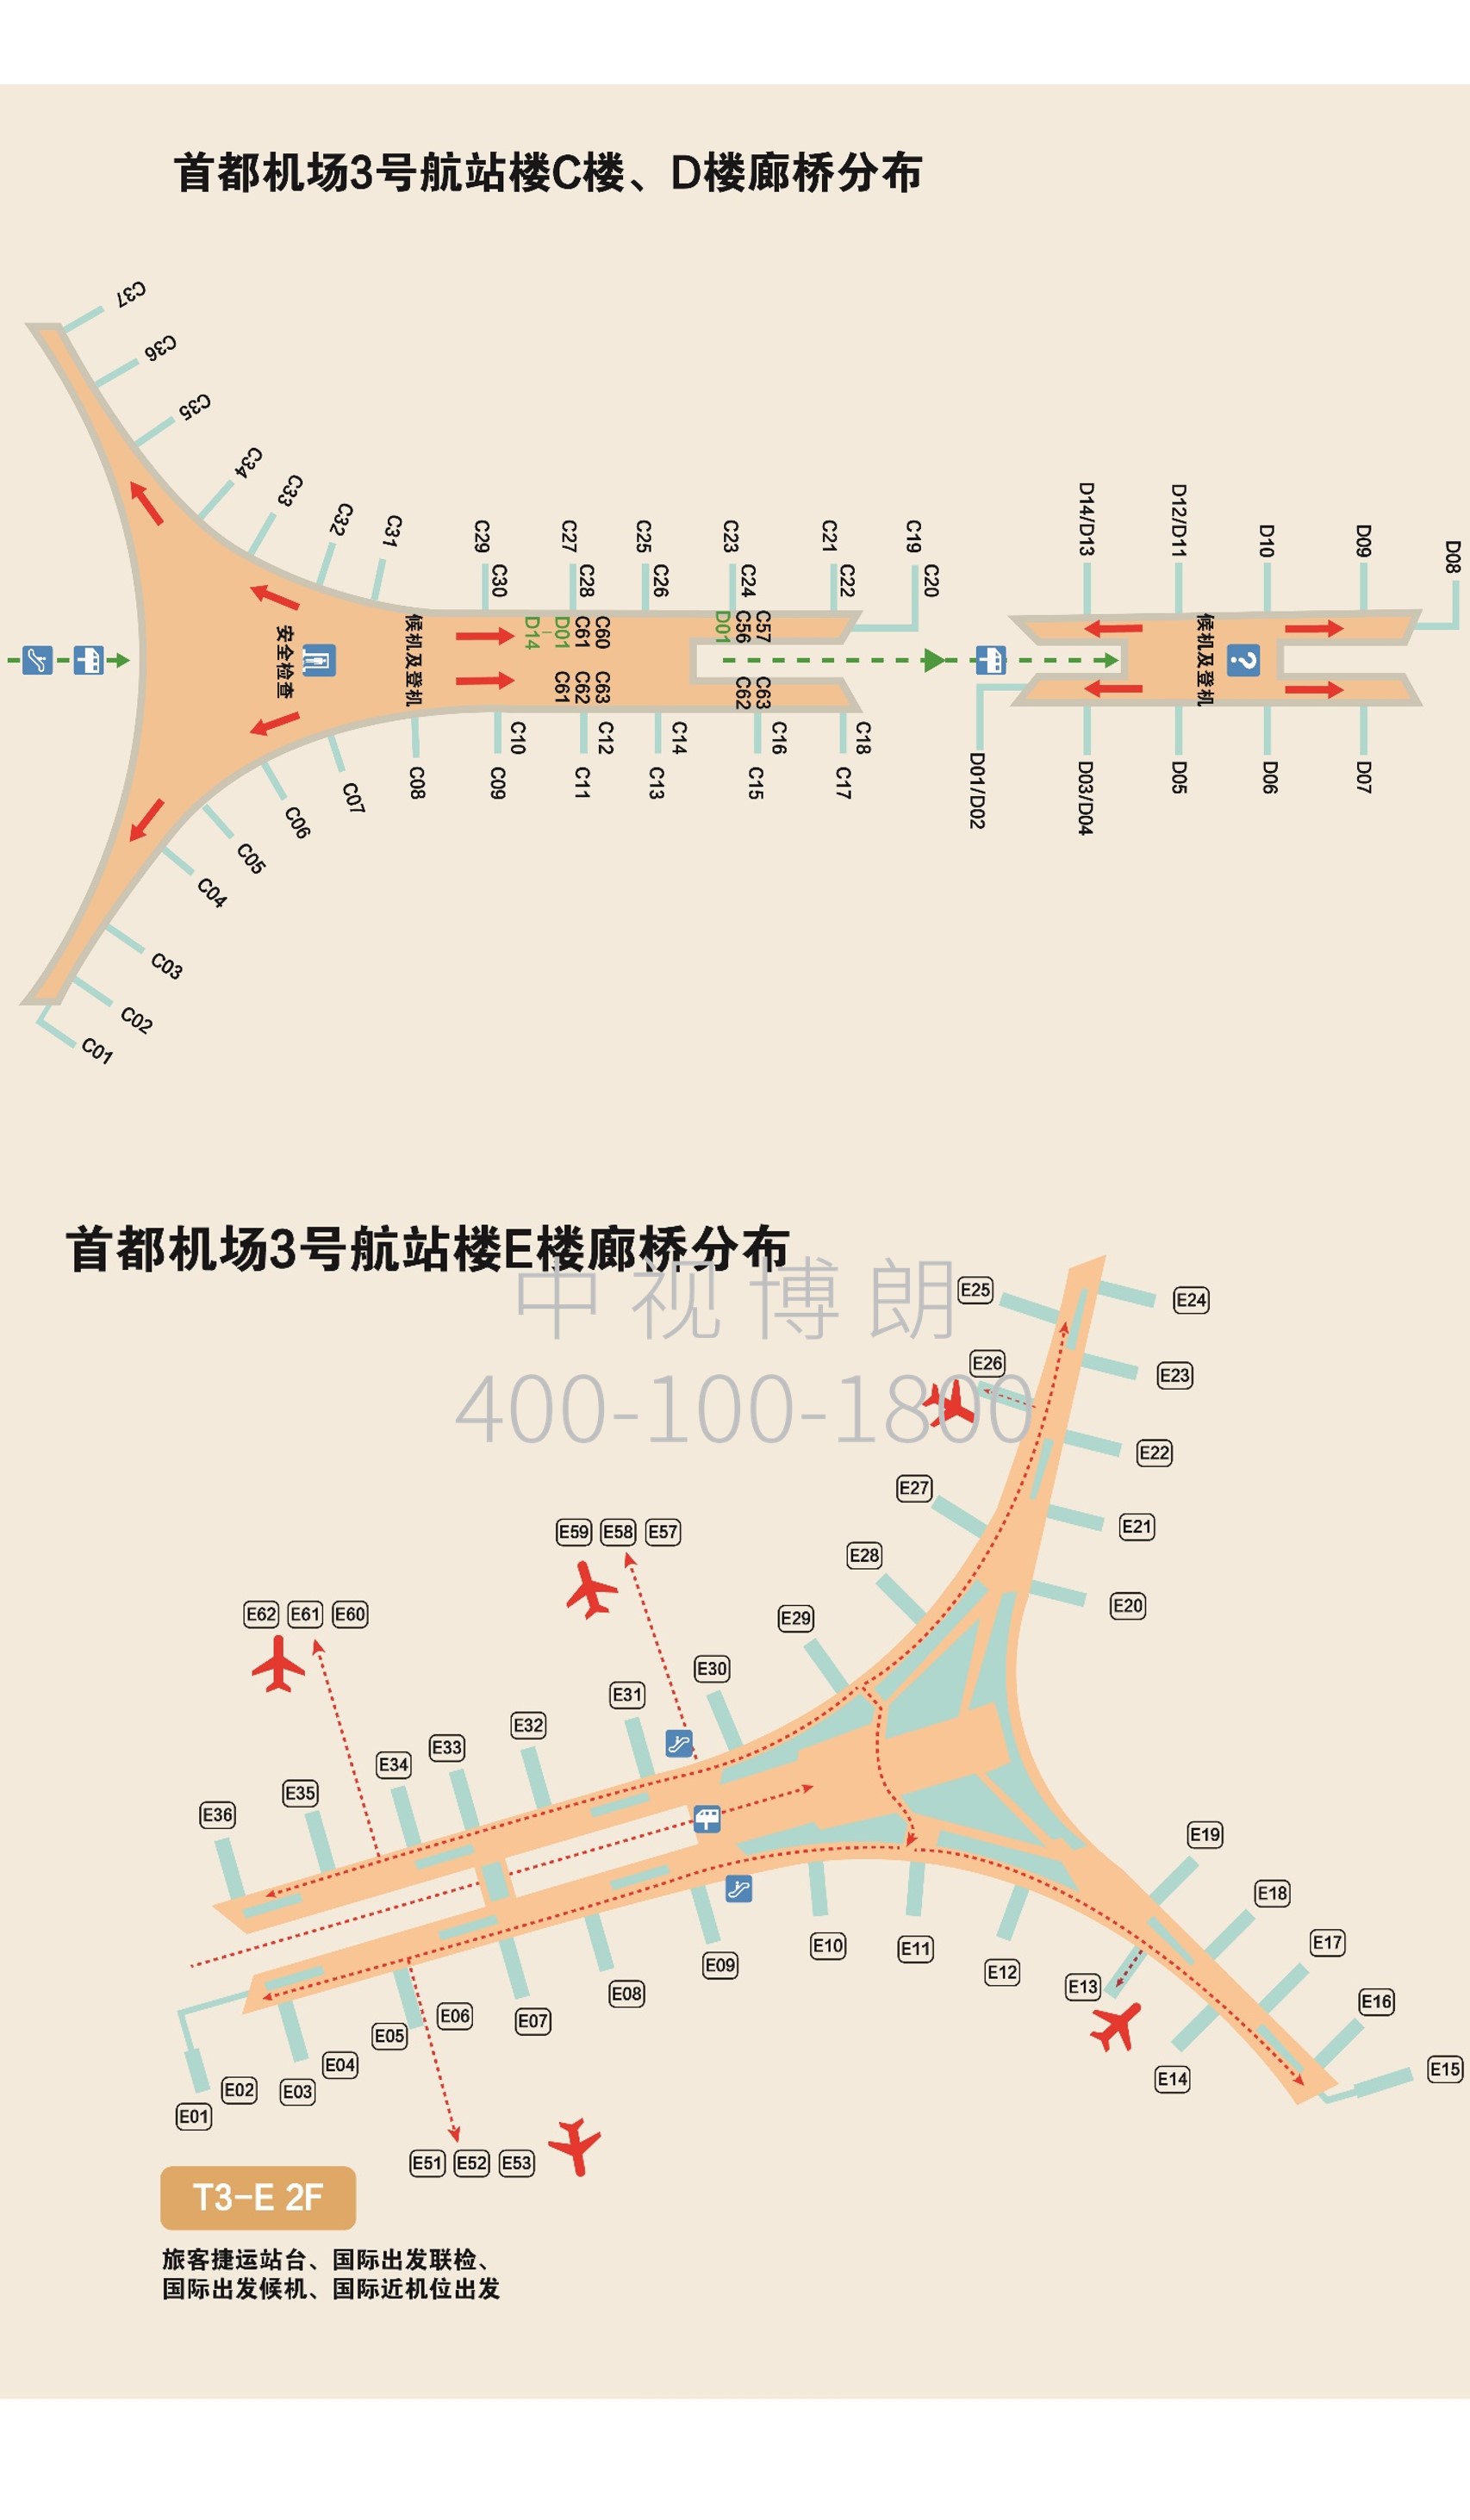 北京首都机场广告-T3 Inner Corridor Bridge Signage Set 1-4位置图